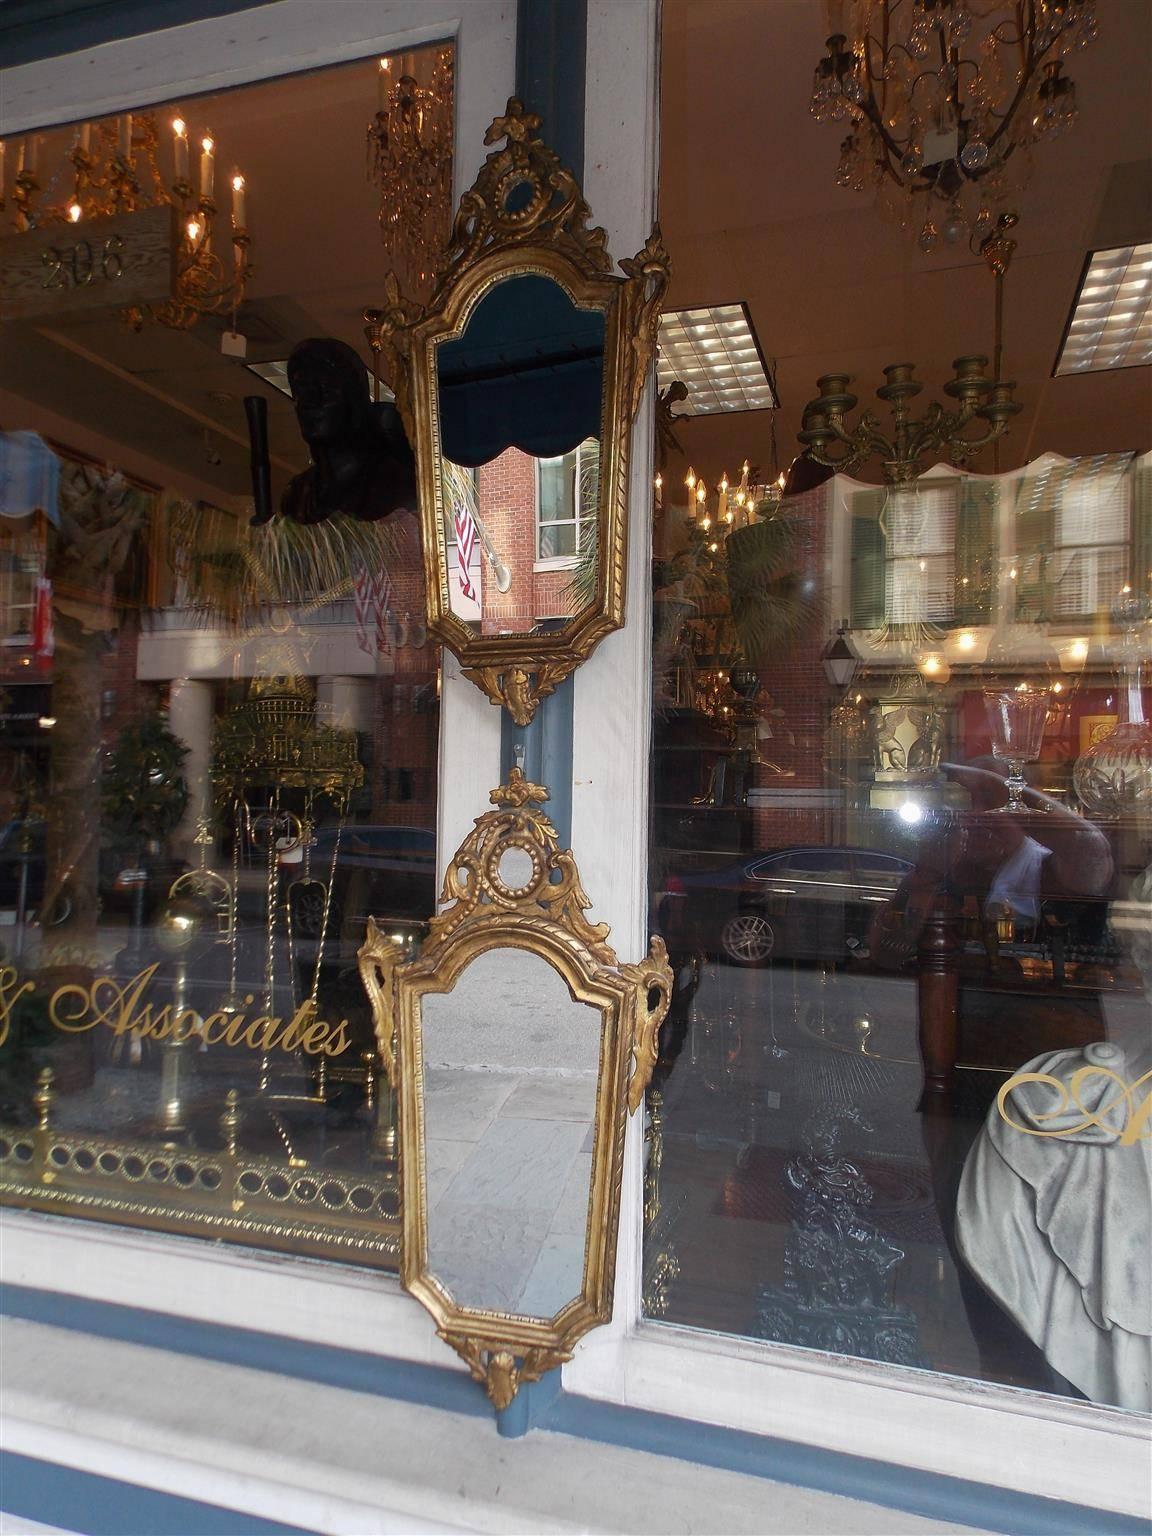 Paire de miroirs muraux italiens en bois sculpté et doré, avec un cartouche floral sculpté, des volutes de feuillage flanquées, un motif intérieur en forme d'œuf et de fléchette, et se terminant par un pendentif floral inférieur. Les miroirs